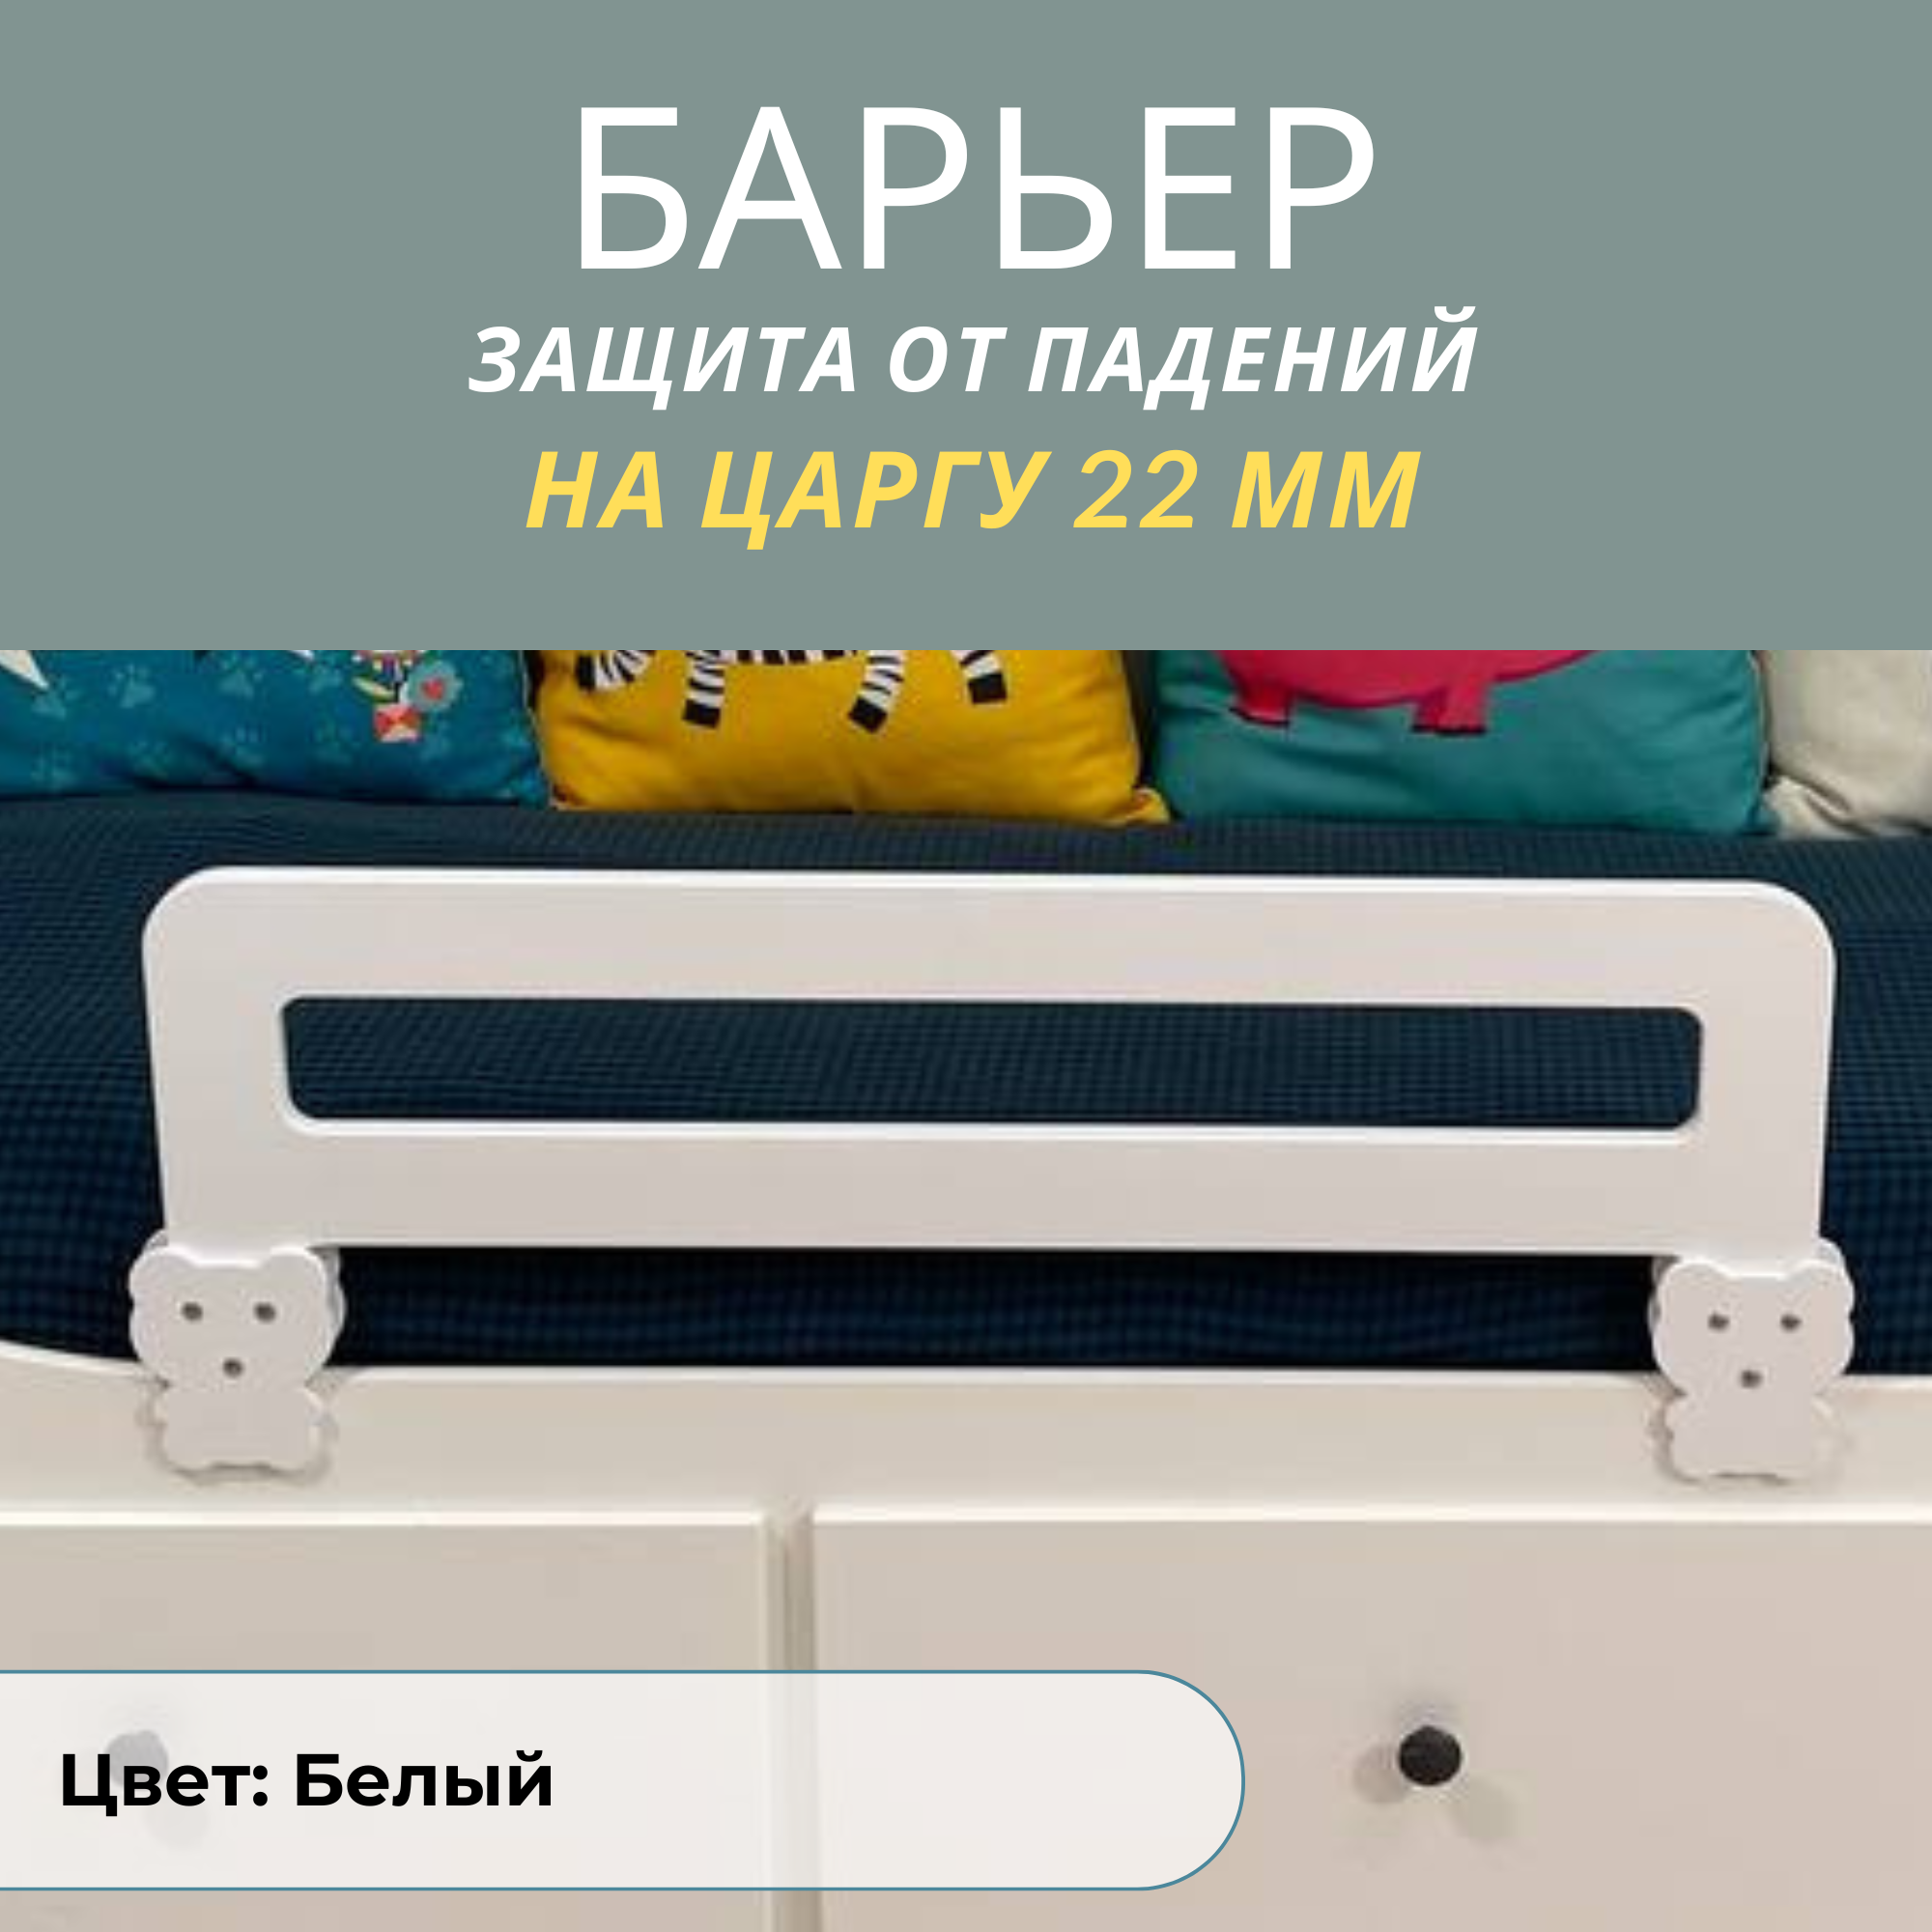 Защитный бортик в кроватку РАСТИ ЗДОРОВО, барьер белый на царгу 22мм., М80Бел22